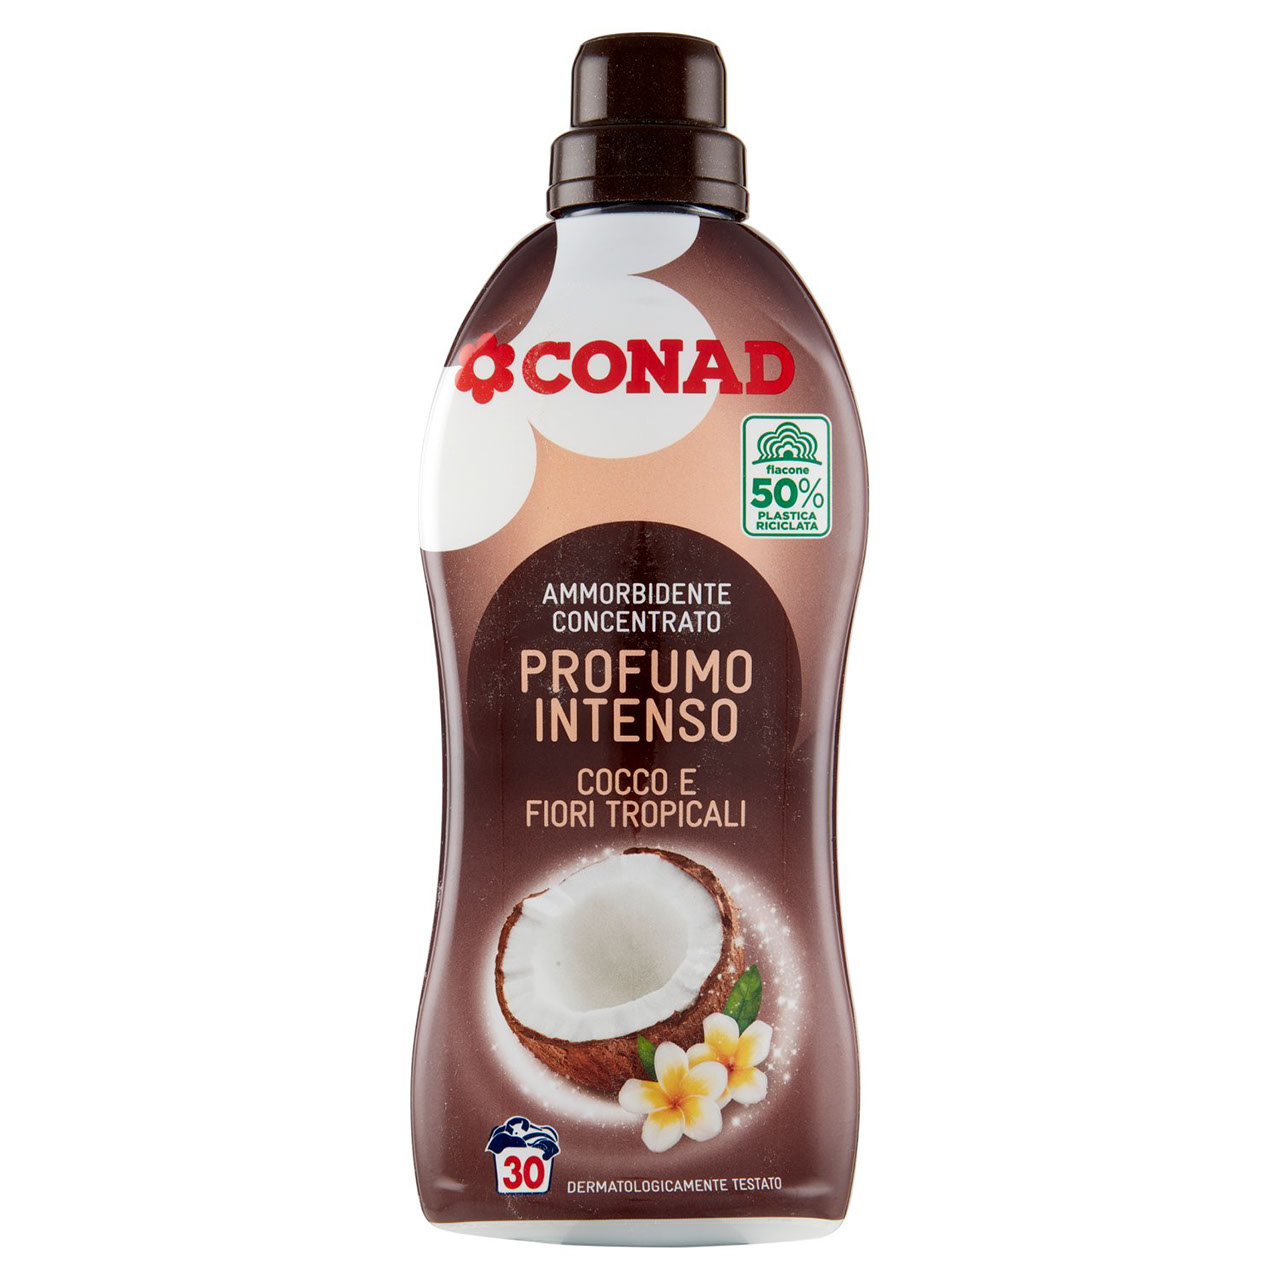 CONAD Ammorbidente Concentrato Profumo Intenso Cocco e Fiori Tropicali 750 ml